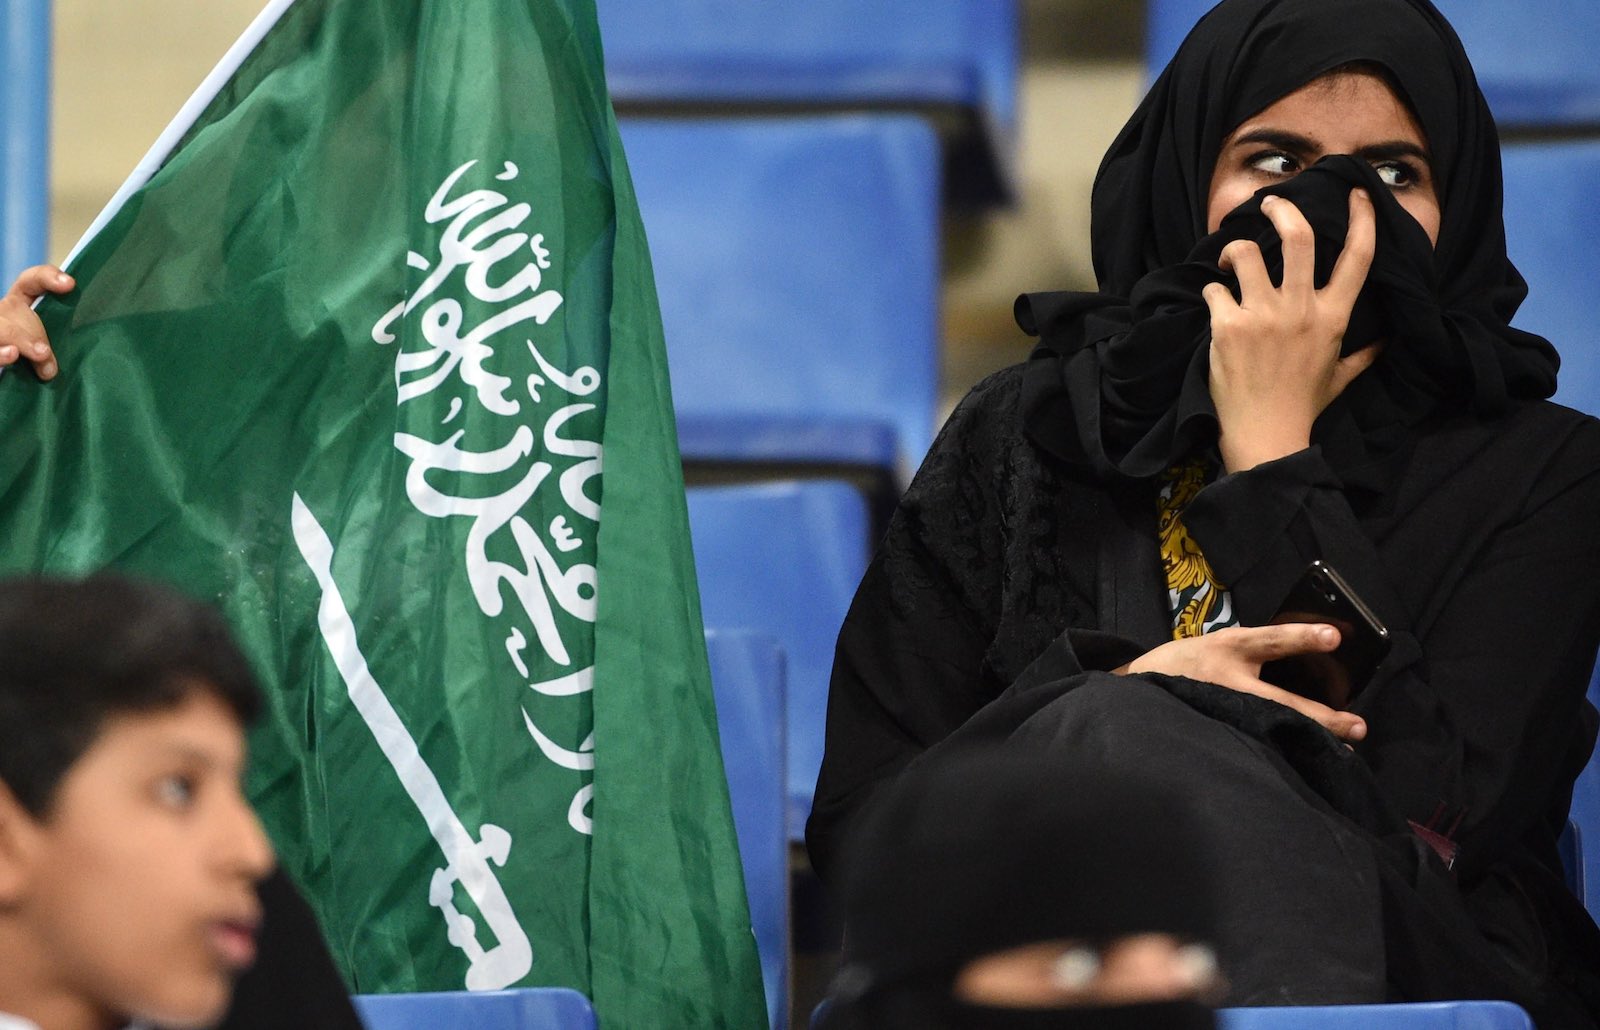 دستاوردهای اخیر زنان عربستان سعودی در مسیر برابری جنسیتی؛ از حق رأی تا اجازه سفر